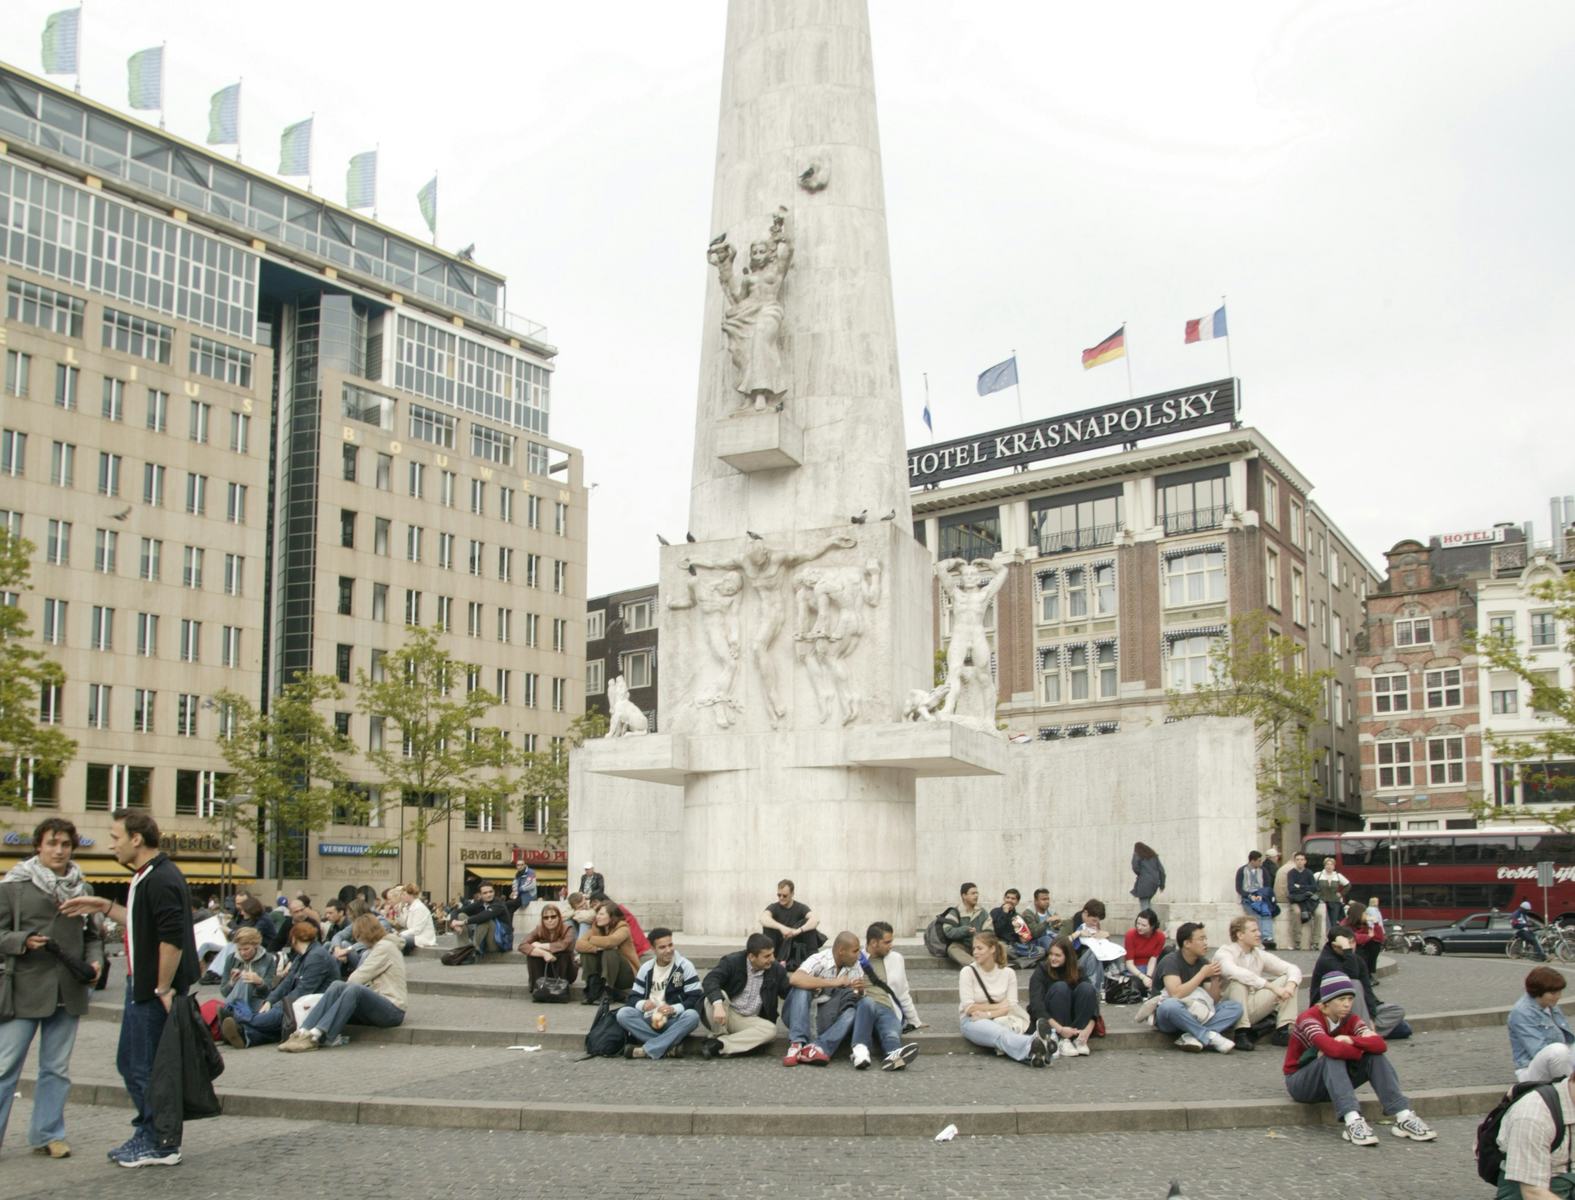 Amsterdam en Londen populairst bij Nederlandse toerist